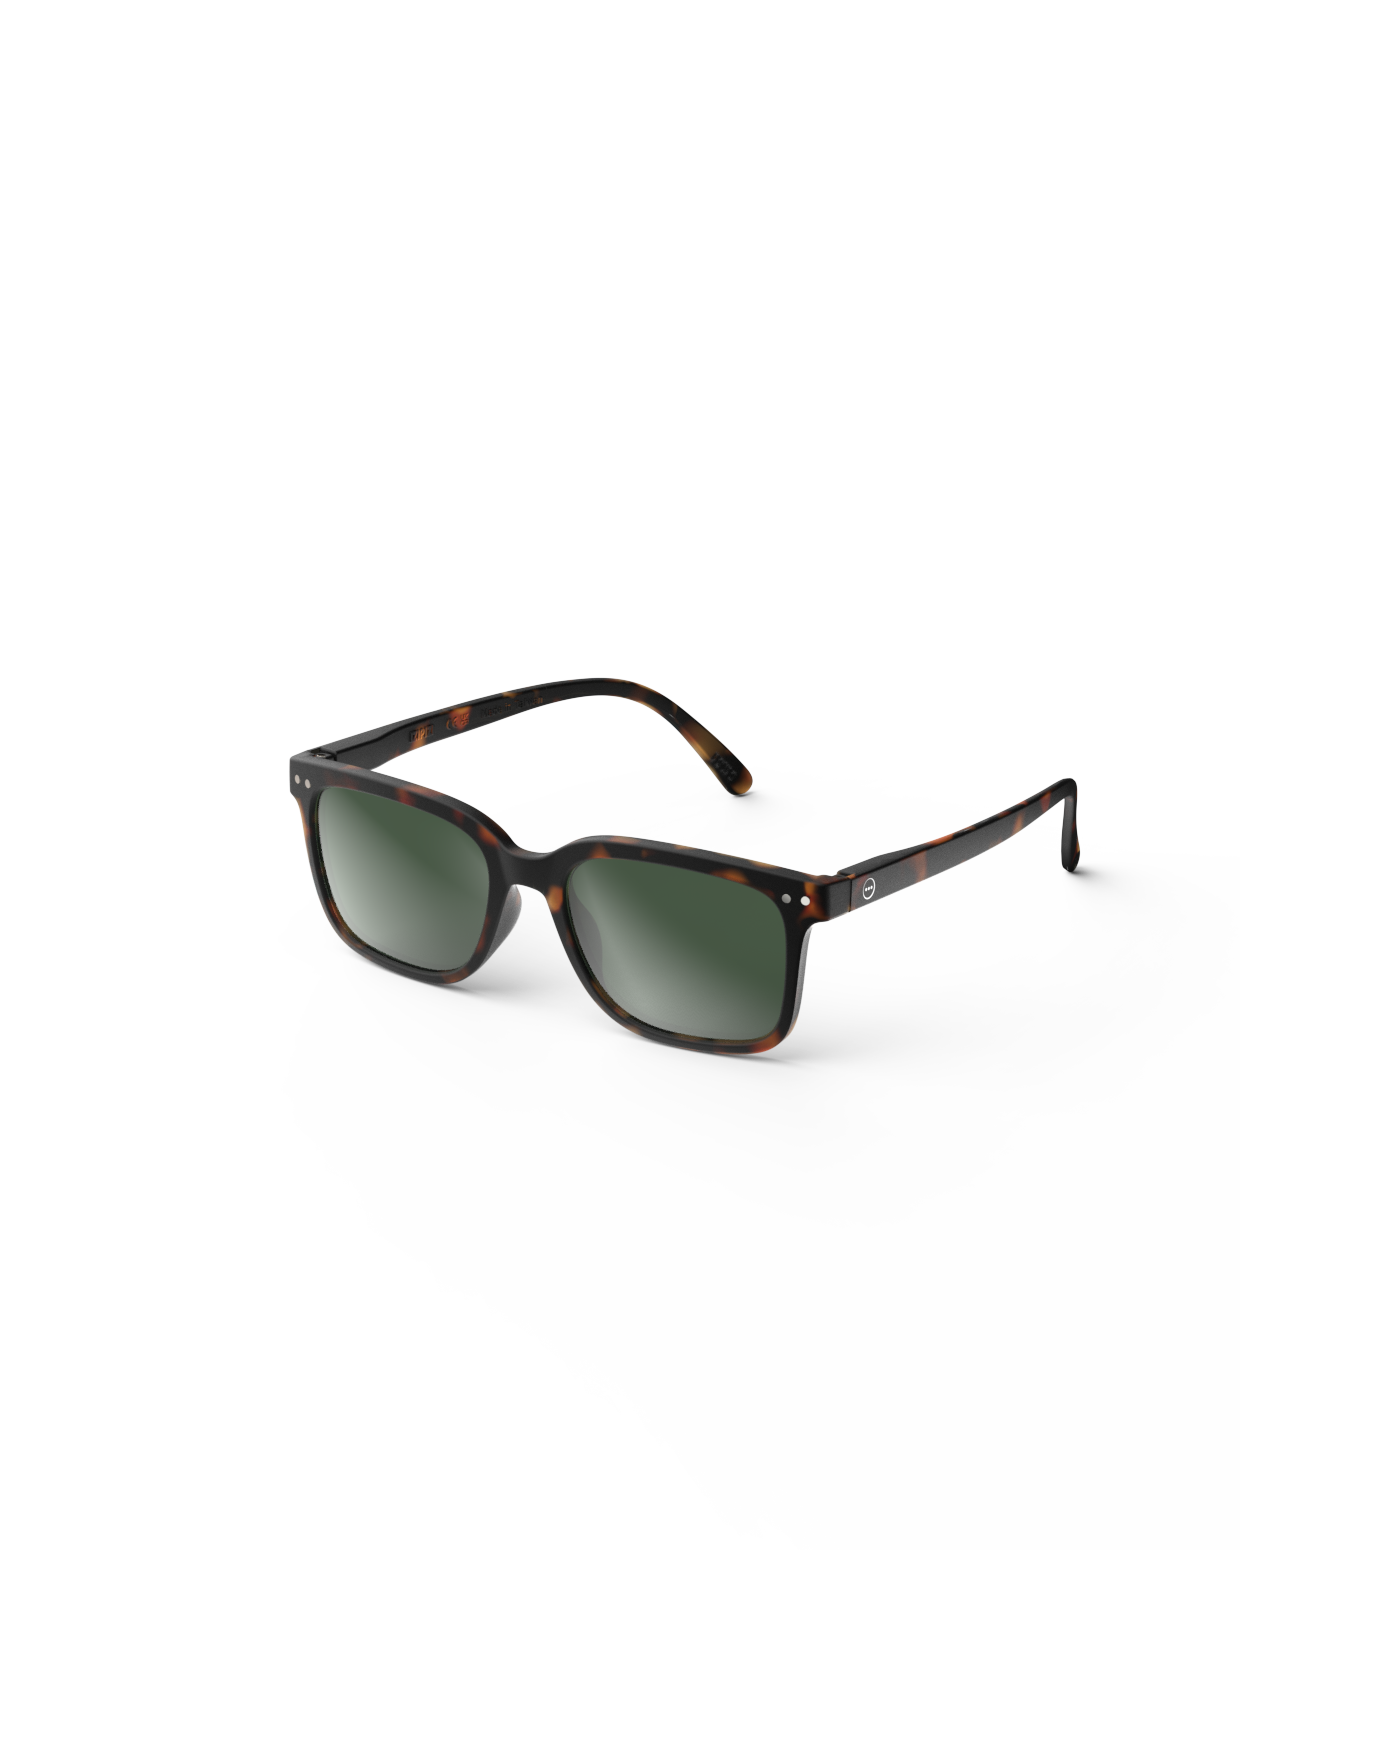 IZIPIZI Sunglasses  - #L Shape Tortoise with Green Lenses